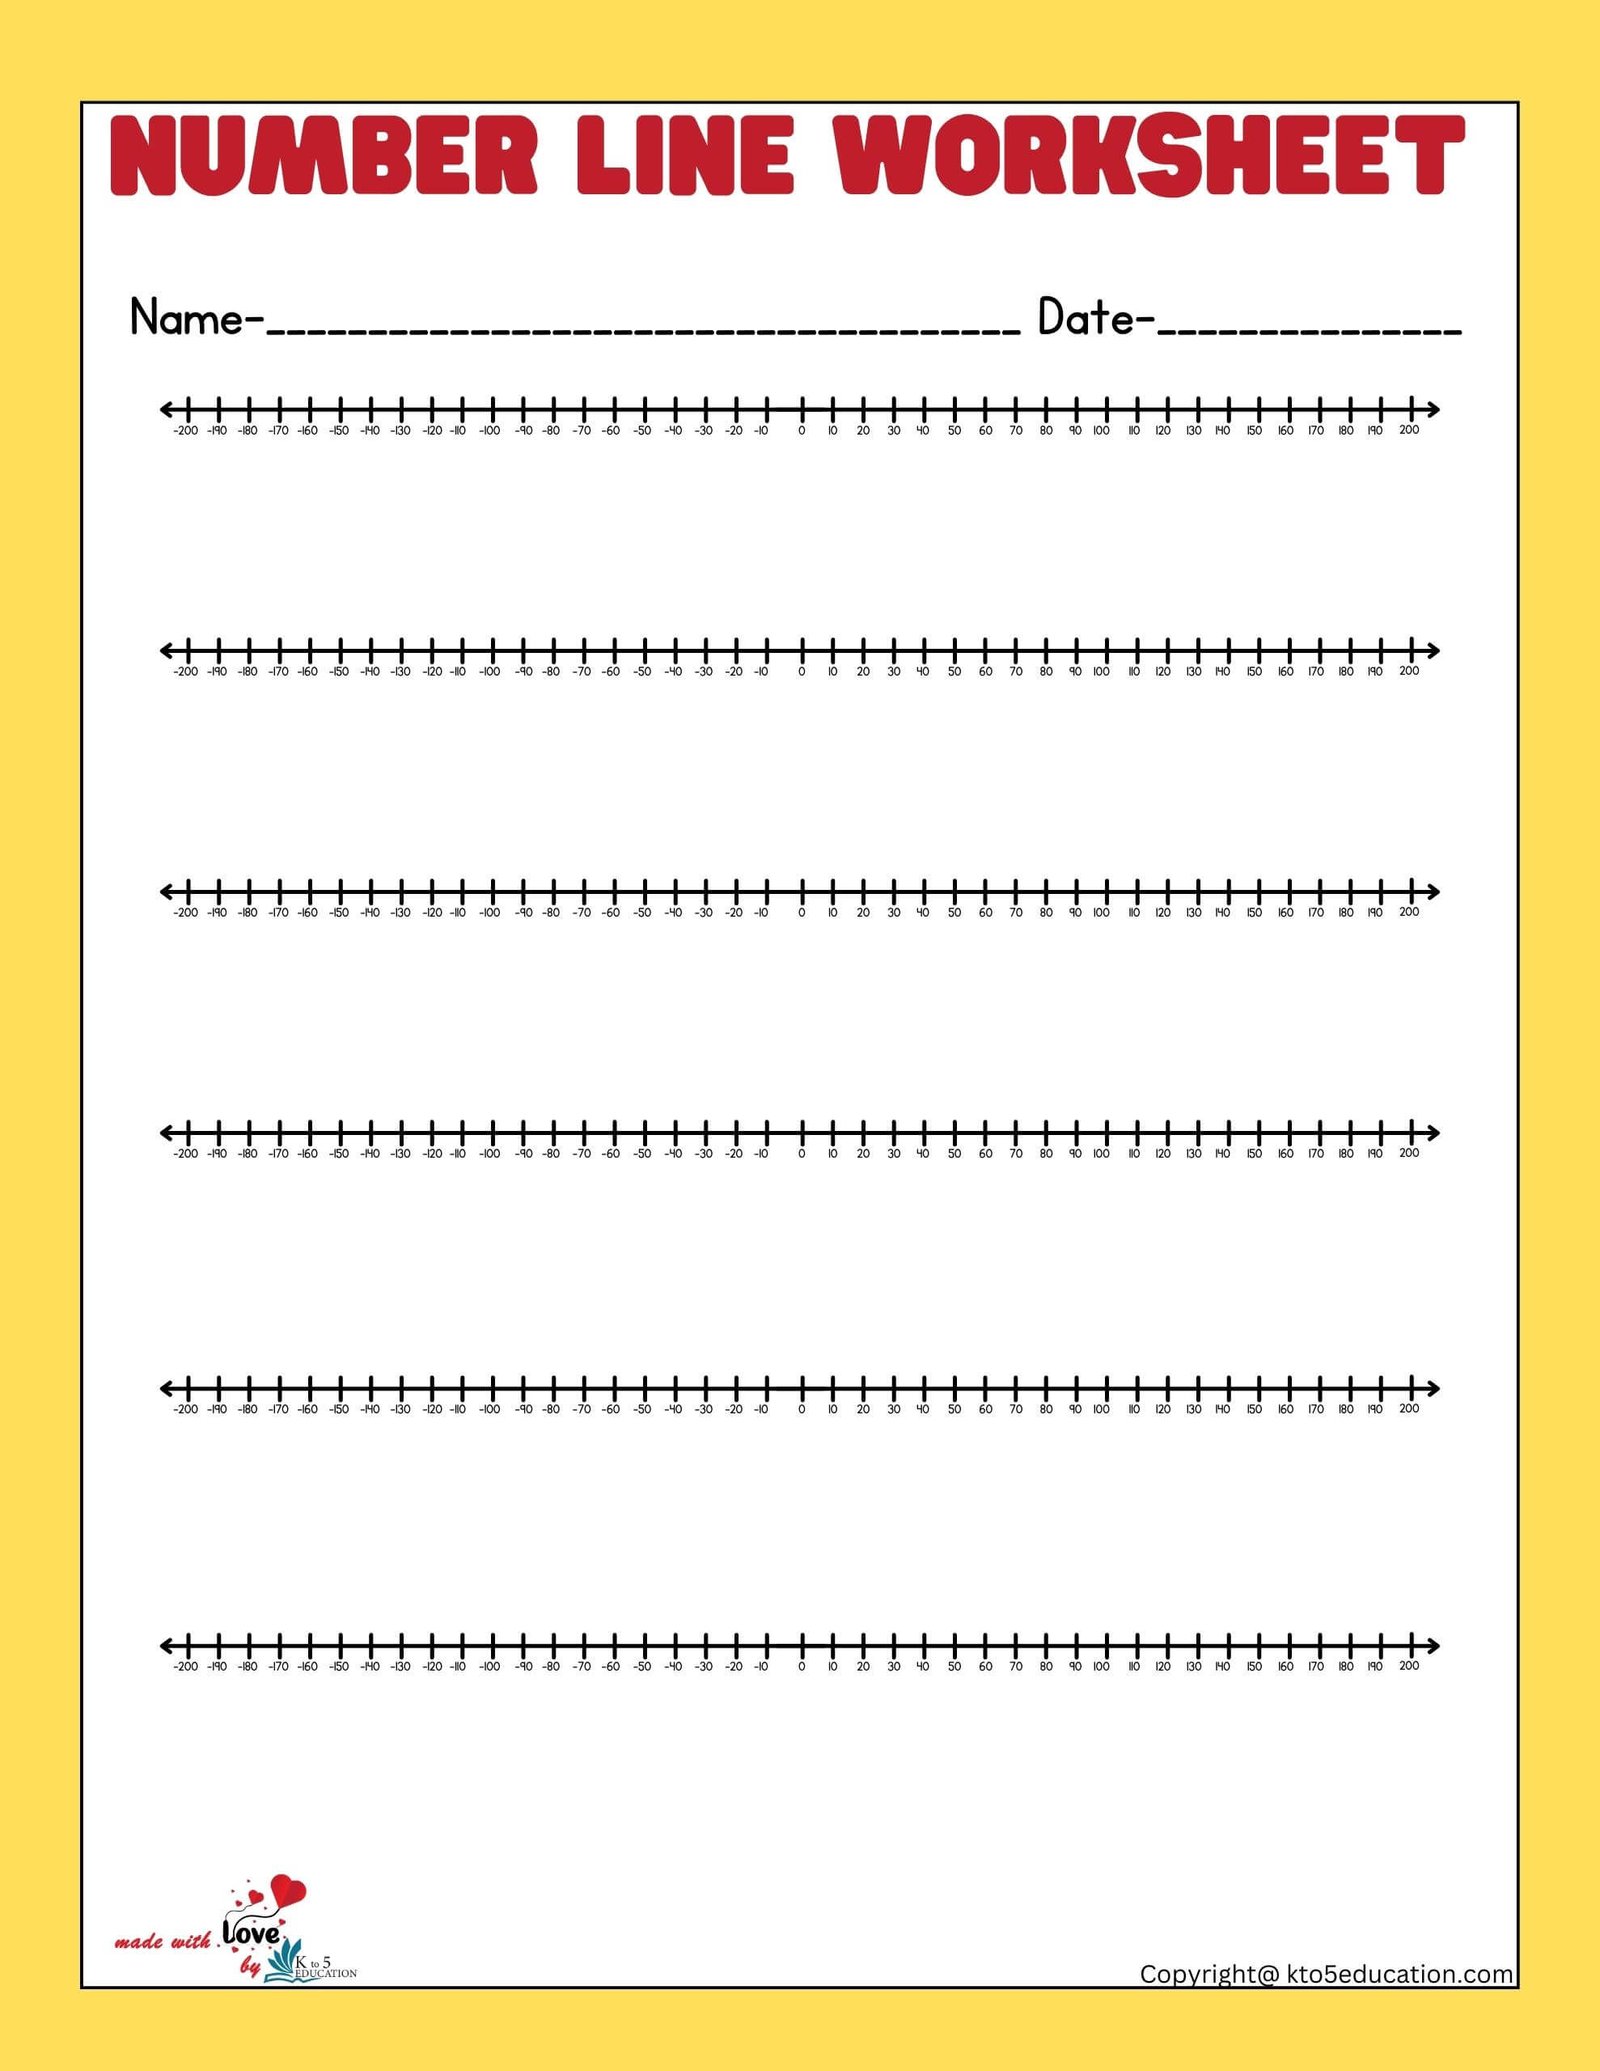 Negative Number Line Printable Worksheets 1-200